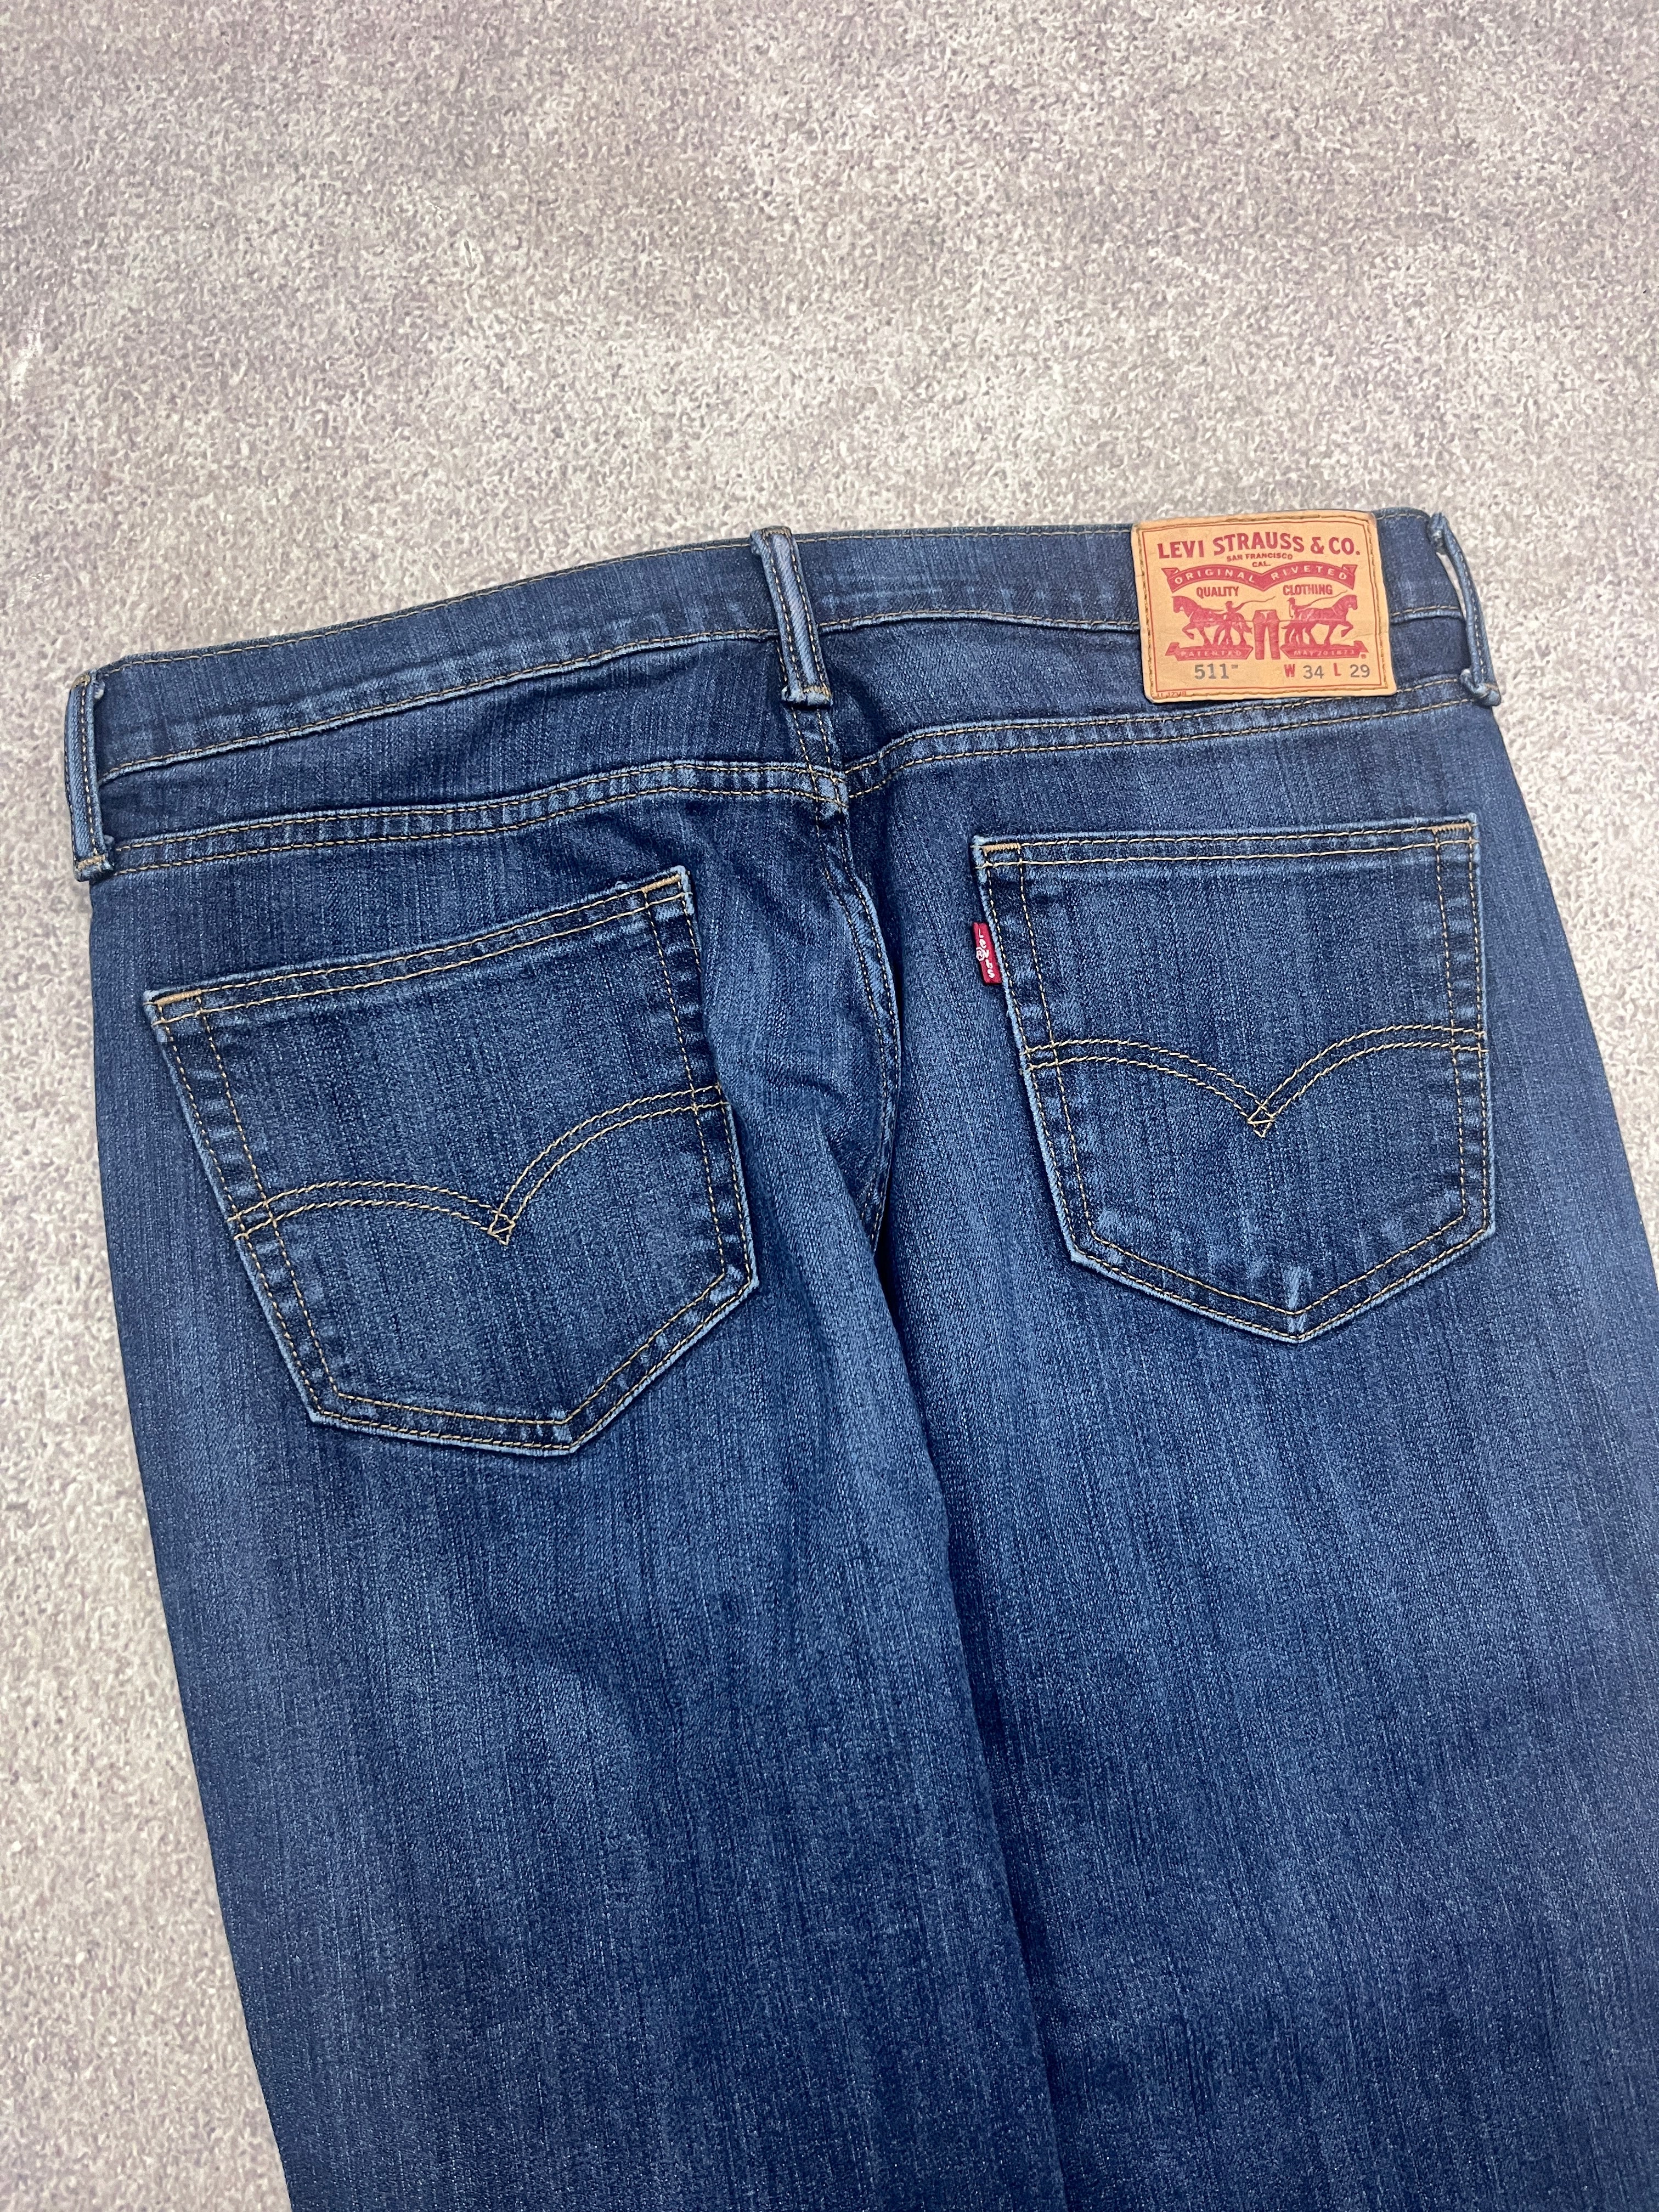 (Kopie) Vintage Levi 511 Denim Jeans Blue // W34 L29 - RHAGHOUSE VINTAGE